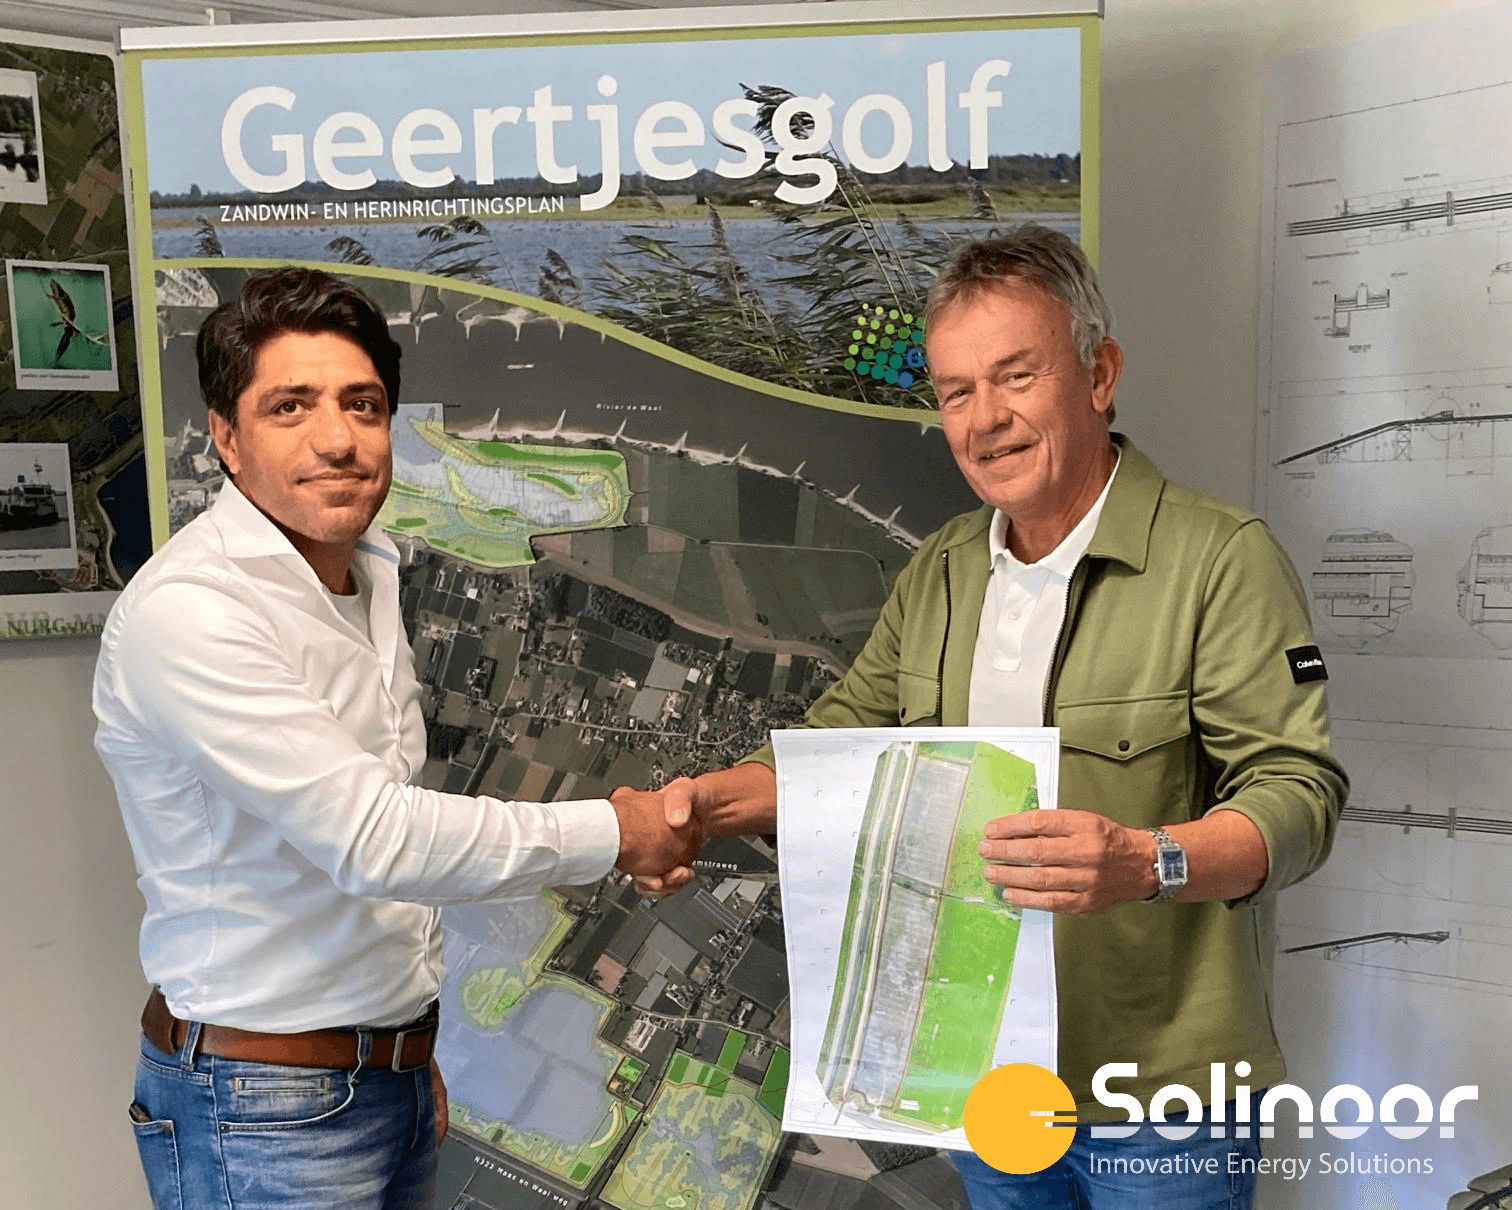 Tekenen contract Solinoor - zandwinning Geertjesgolf - Zonnepark